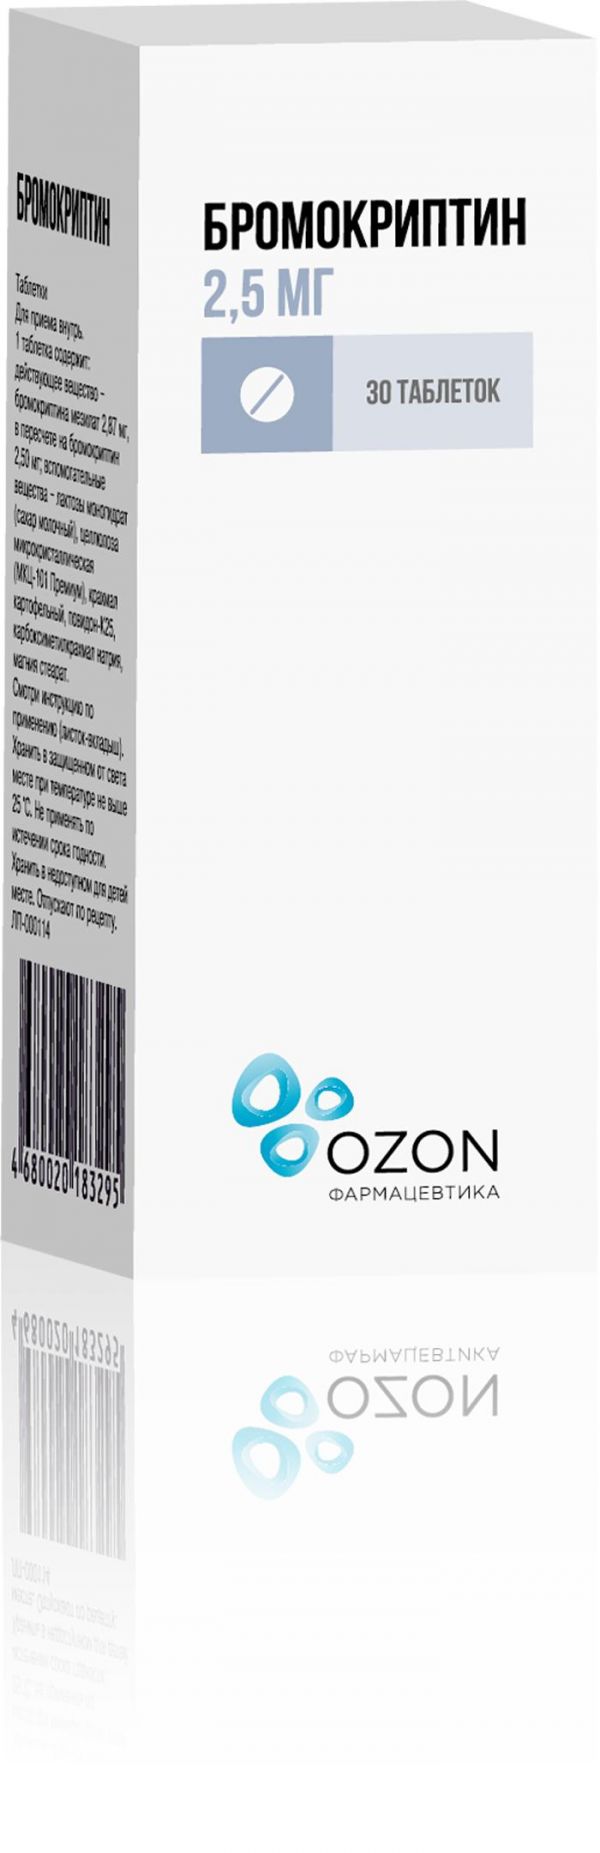 Бромокриптин 2.5мг таблетки №30 (Озон ооо_2)